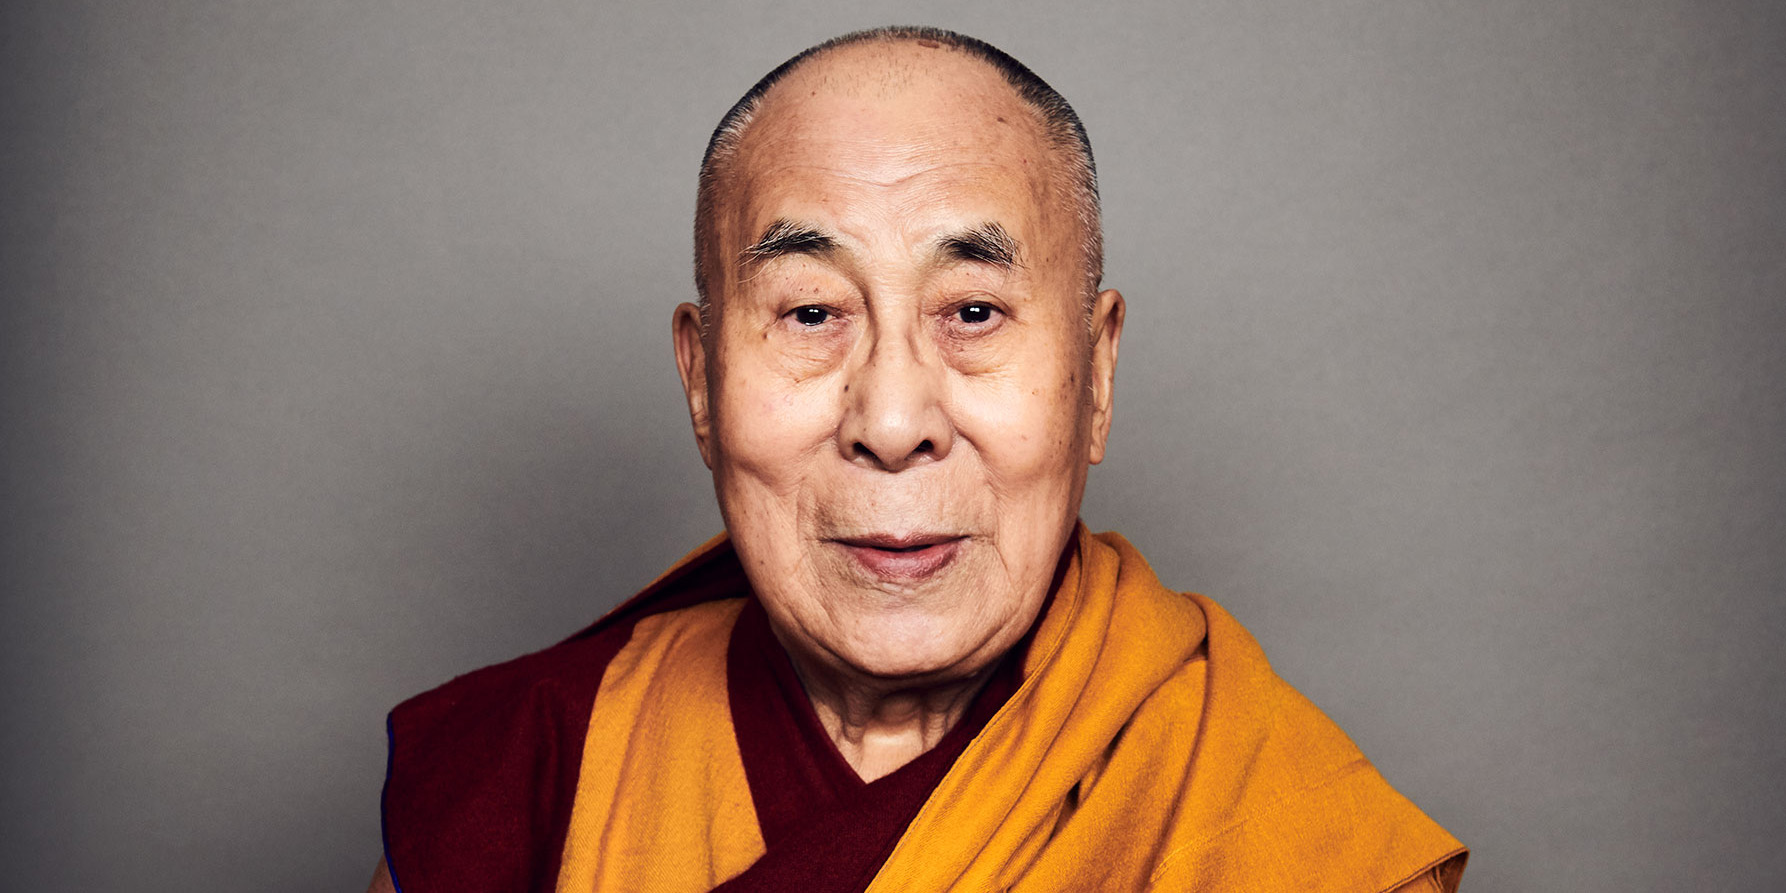 «Молитвы недостаточно». Далай-лама о том, почему нам нужно бороться с коронавирусом с состраданием thumbnail